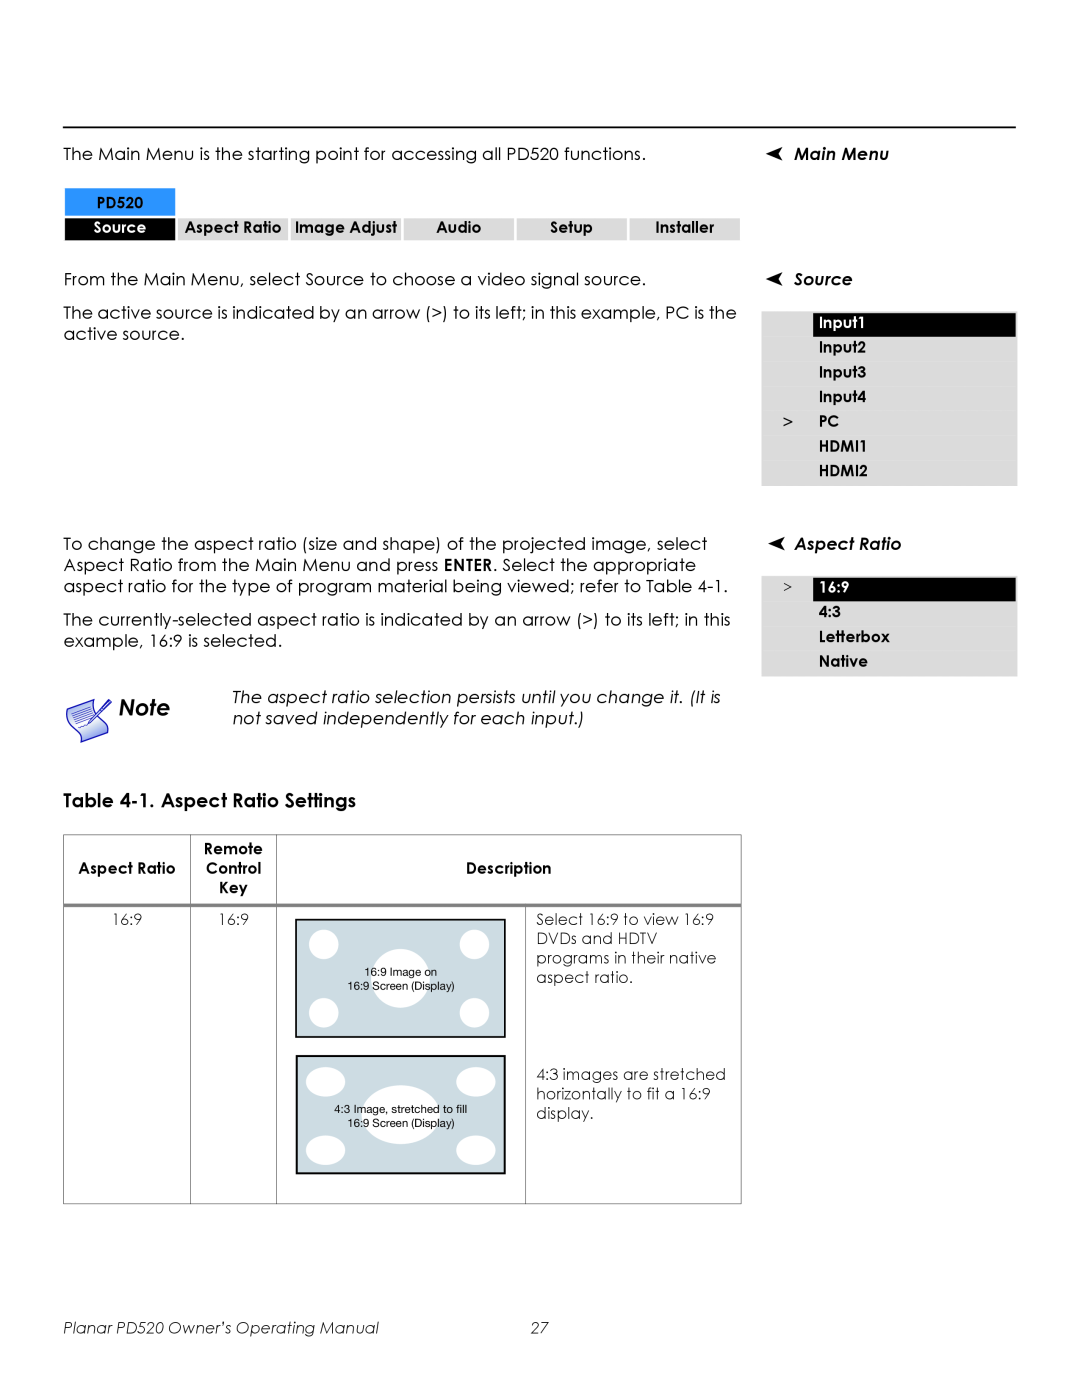 Planar PD520 manual 1.Aspect Ratio Settings, Main Menu, Source 